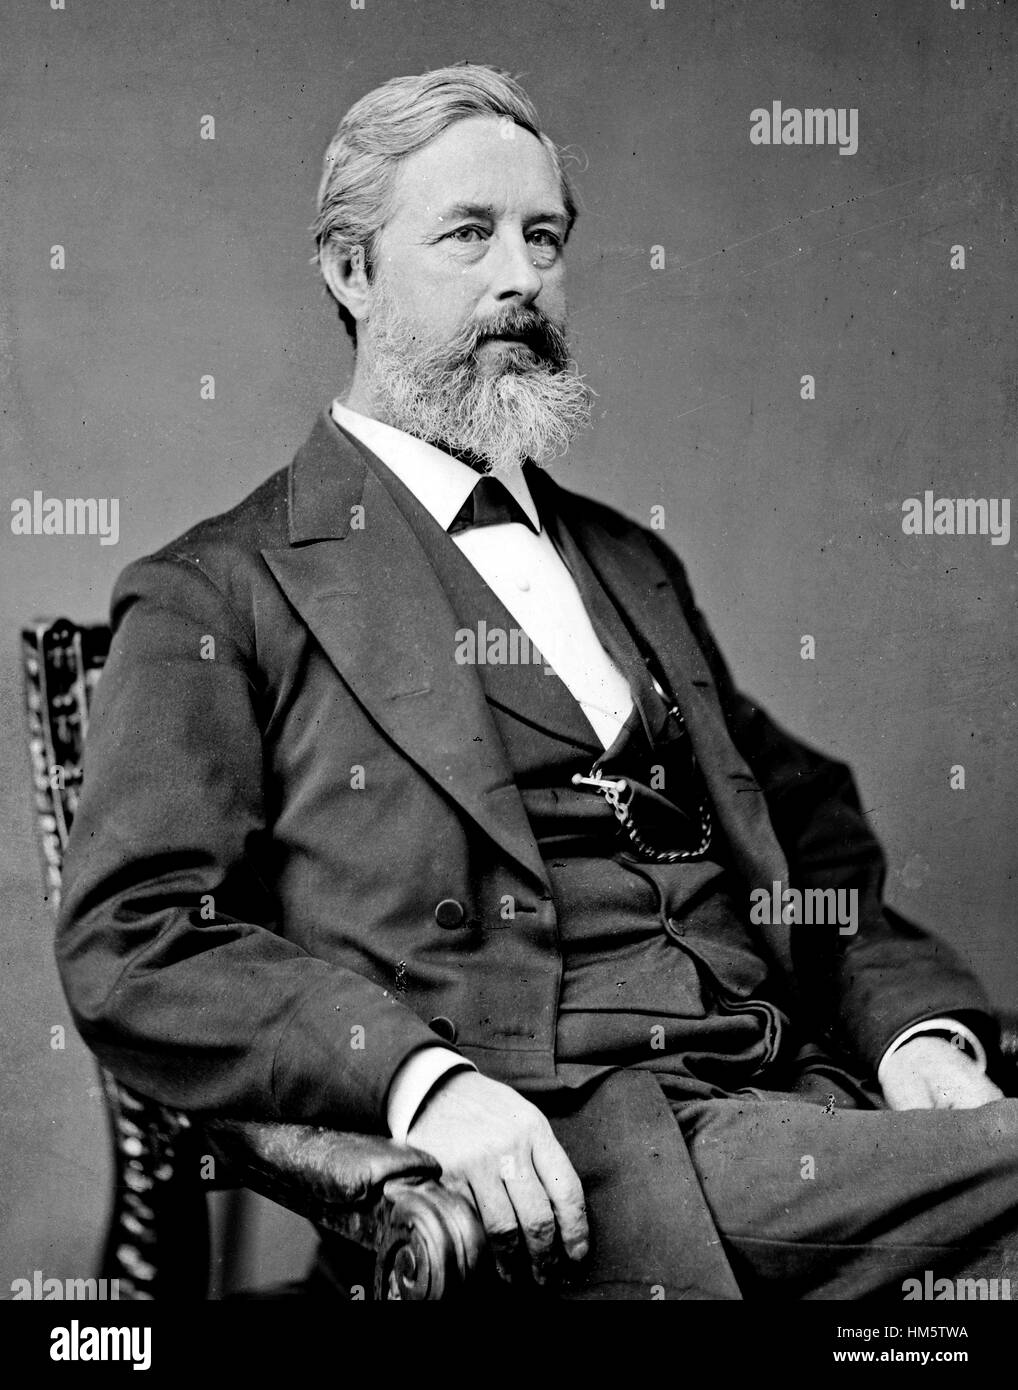 AARON AGOSTO SARGENT (1827-1887) senatore americano, scrittore e avvocato del suffragio femminile circa 1870. Foto: Matthew Brady Foto Stock